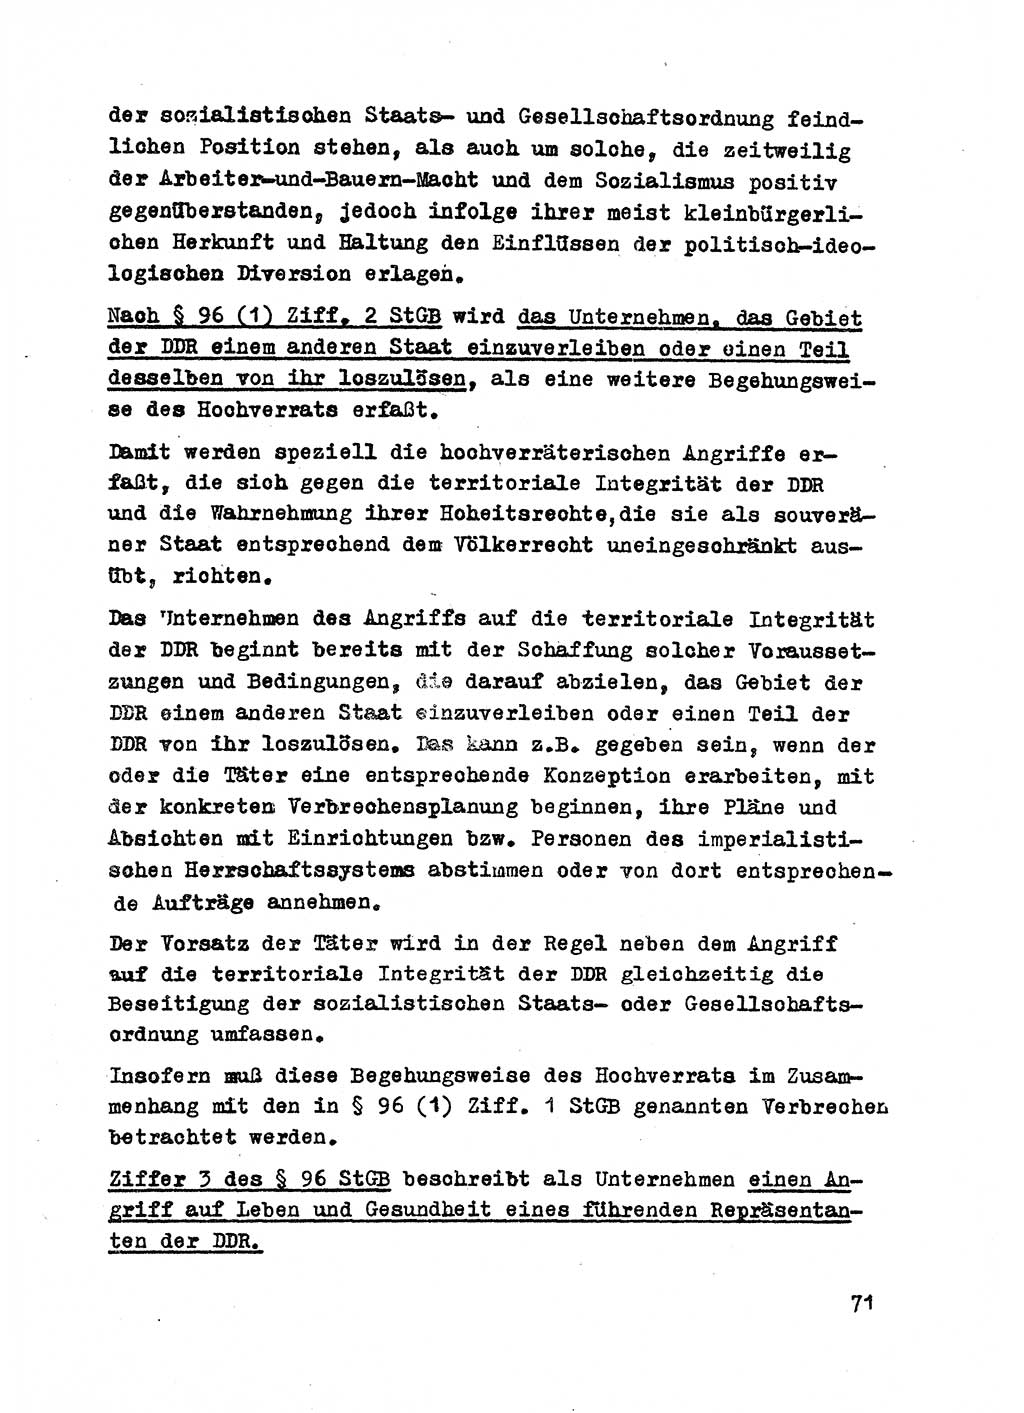 Strafrecht der DDR (Deutsche Demokratische Republik), Besonderer Teil, Lehrmaterial, Heft 2 1969, Seite 71 (Strafr. DDR BT Lehrmat. H. 2 1969, S. 71)